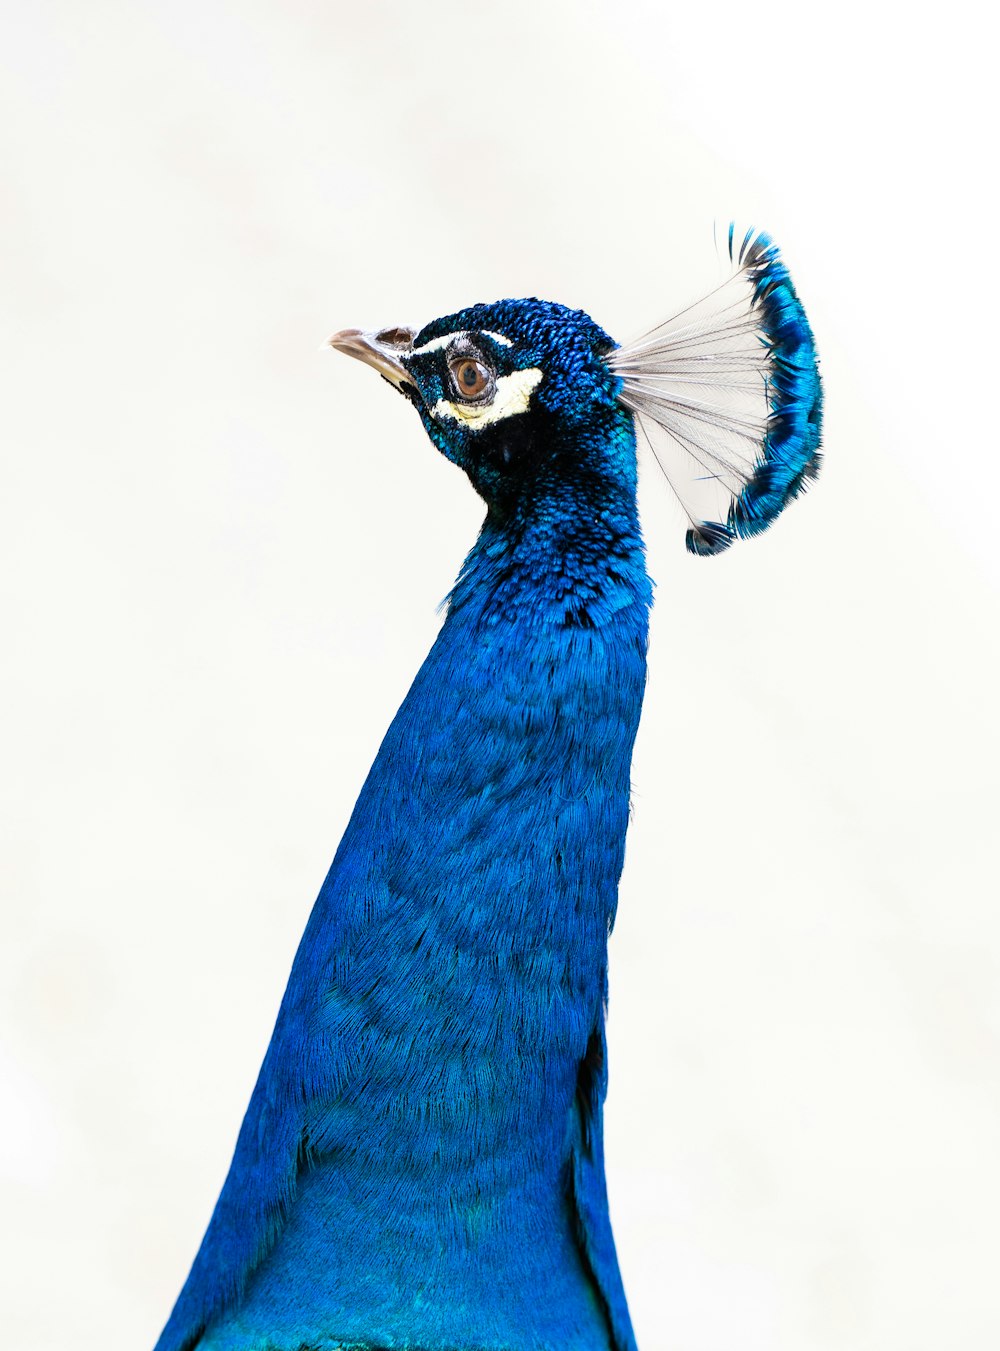 非常に長い尾を持つ青い鳥